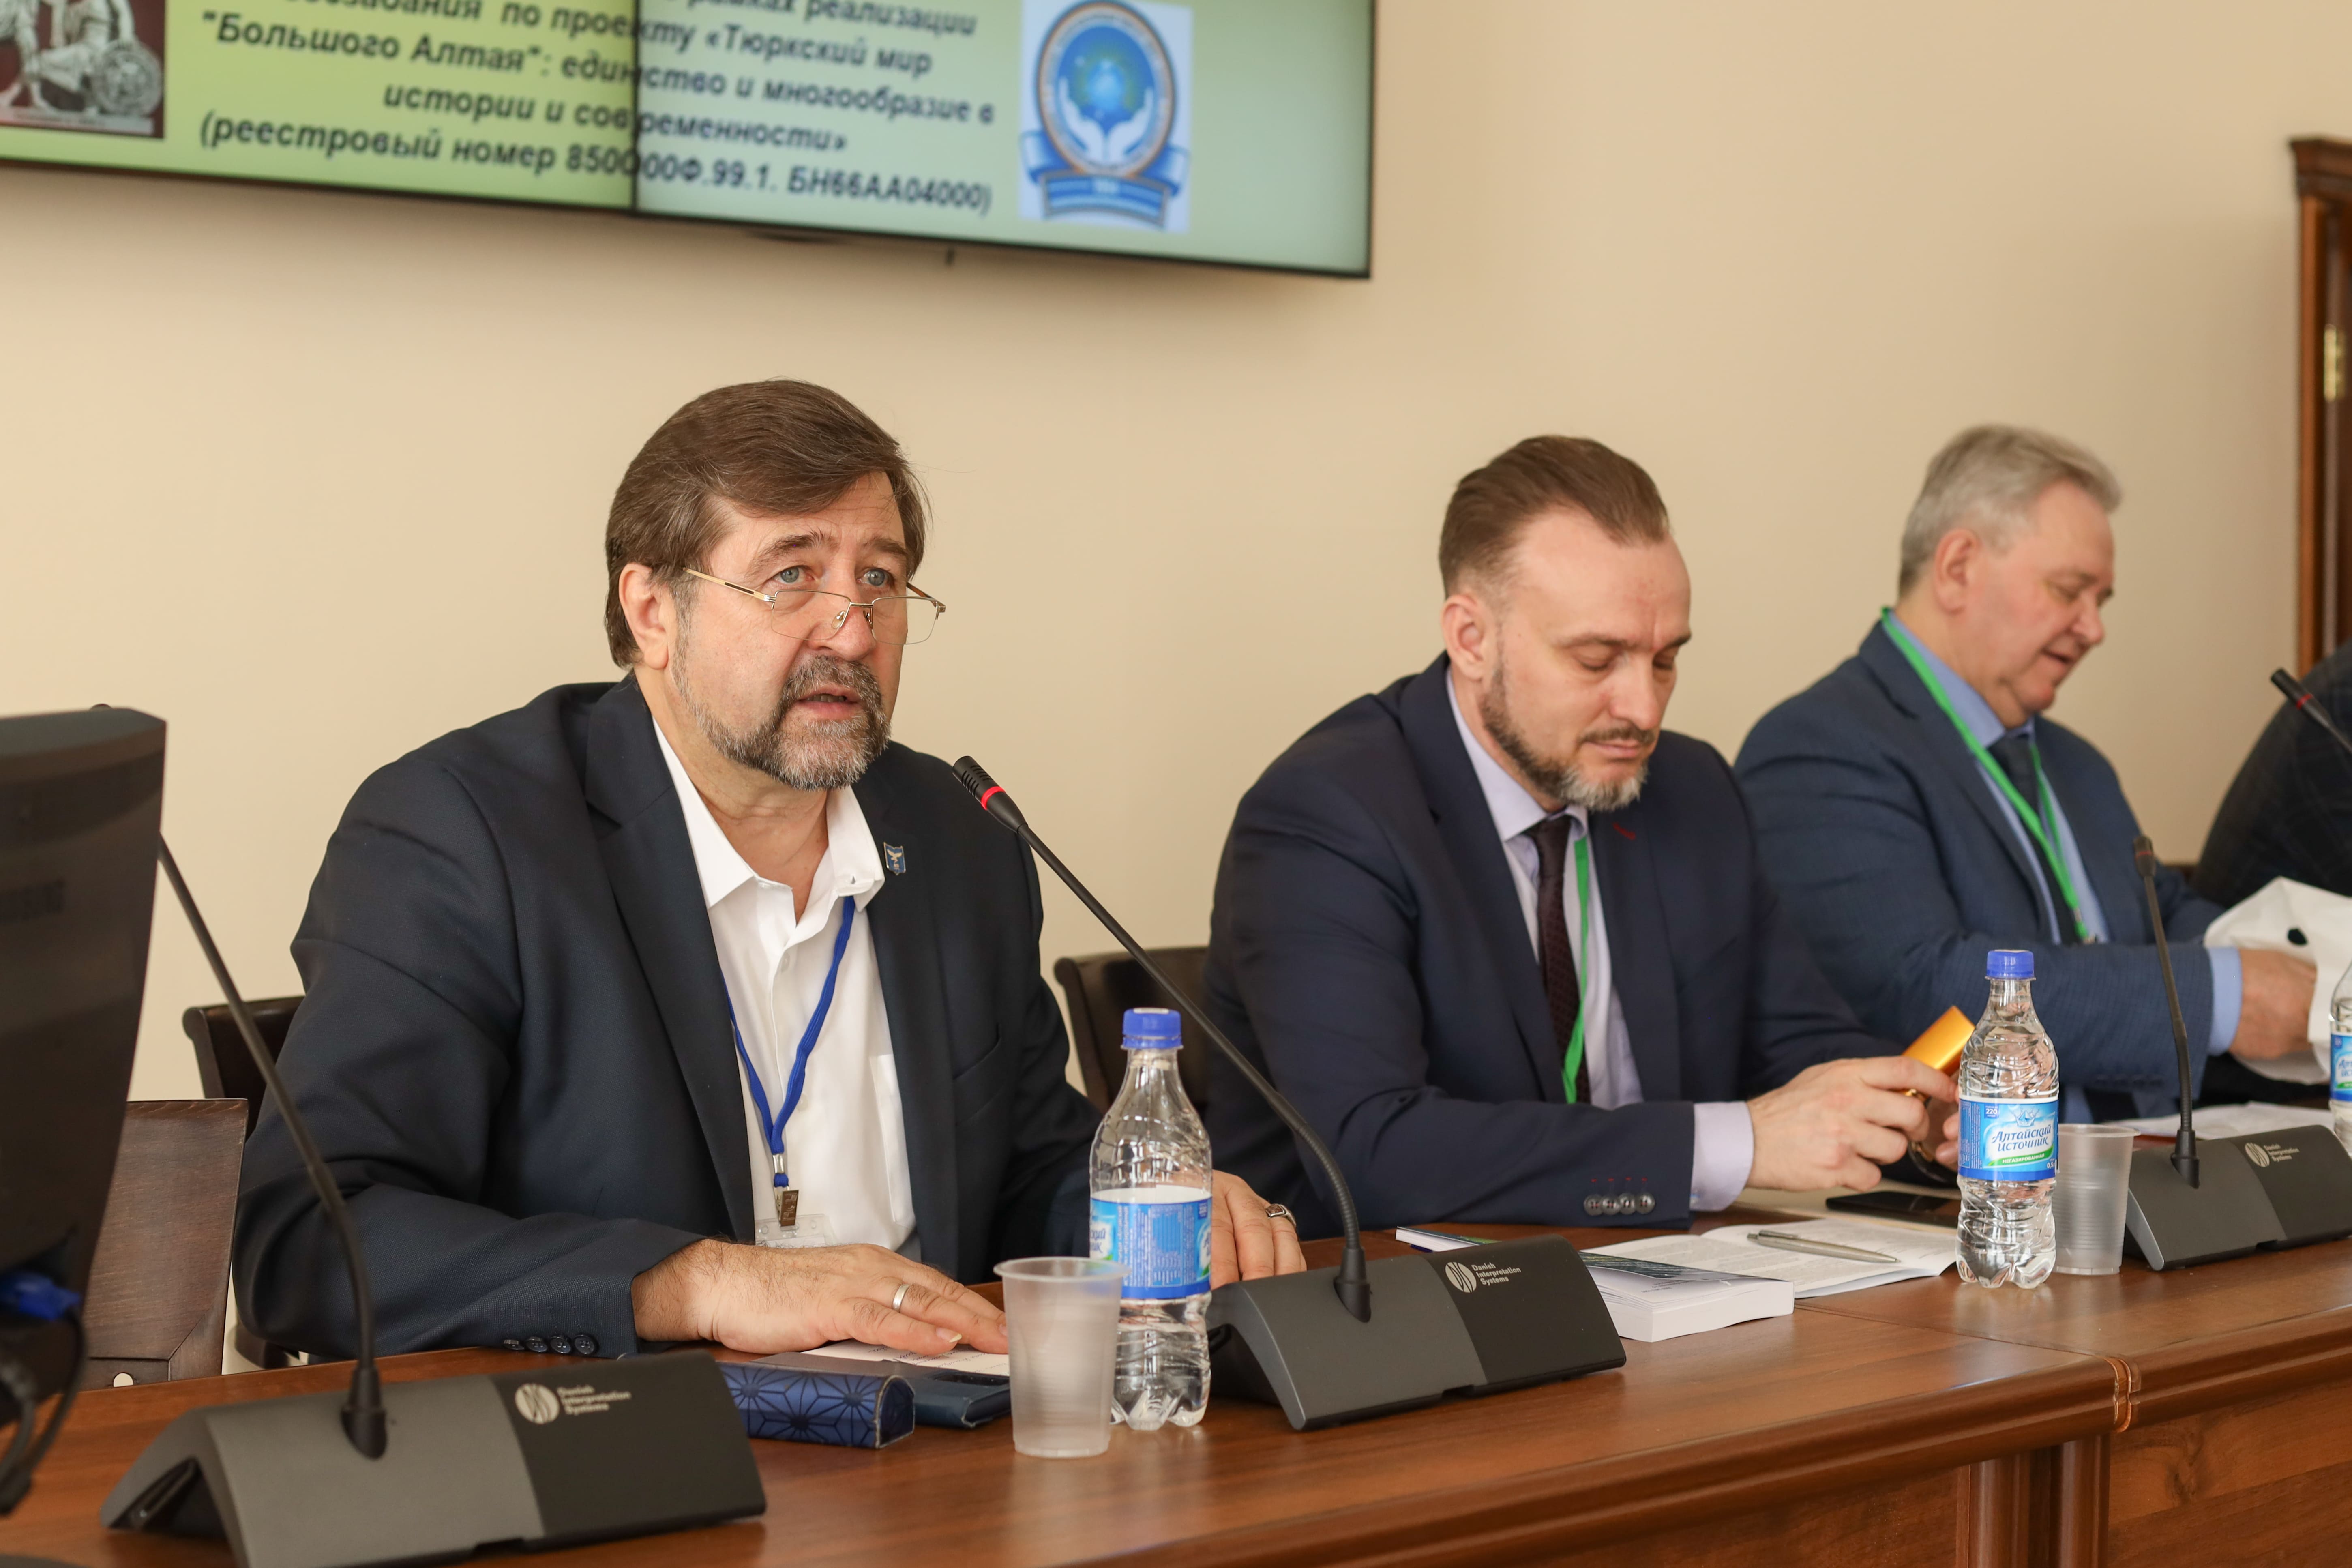 Сохранение и изучение культурного наследия Алтая обсудили на Международном симпозиуме в АлтГУ